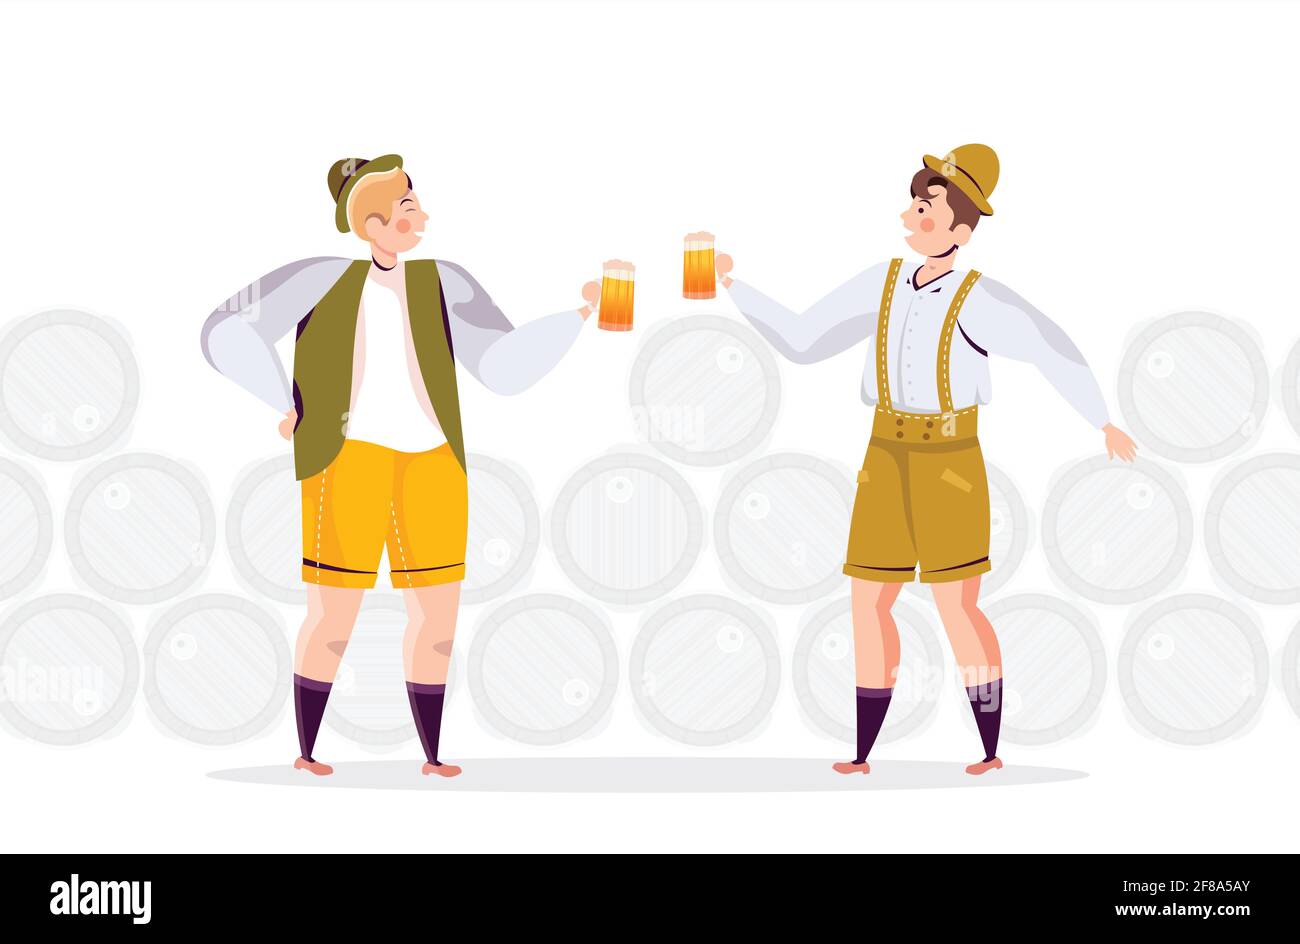 Menschen in traditionellen Kleidern Bier trinken feiern Oktoberfest Party Freunde Spaß haben Stock Vektor